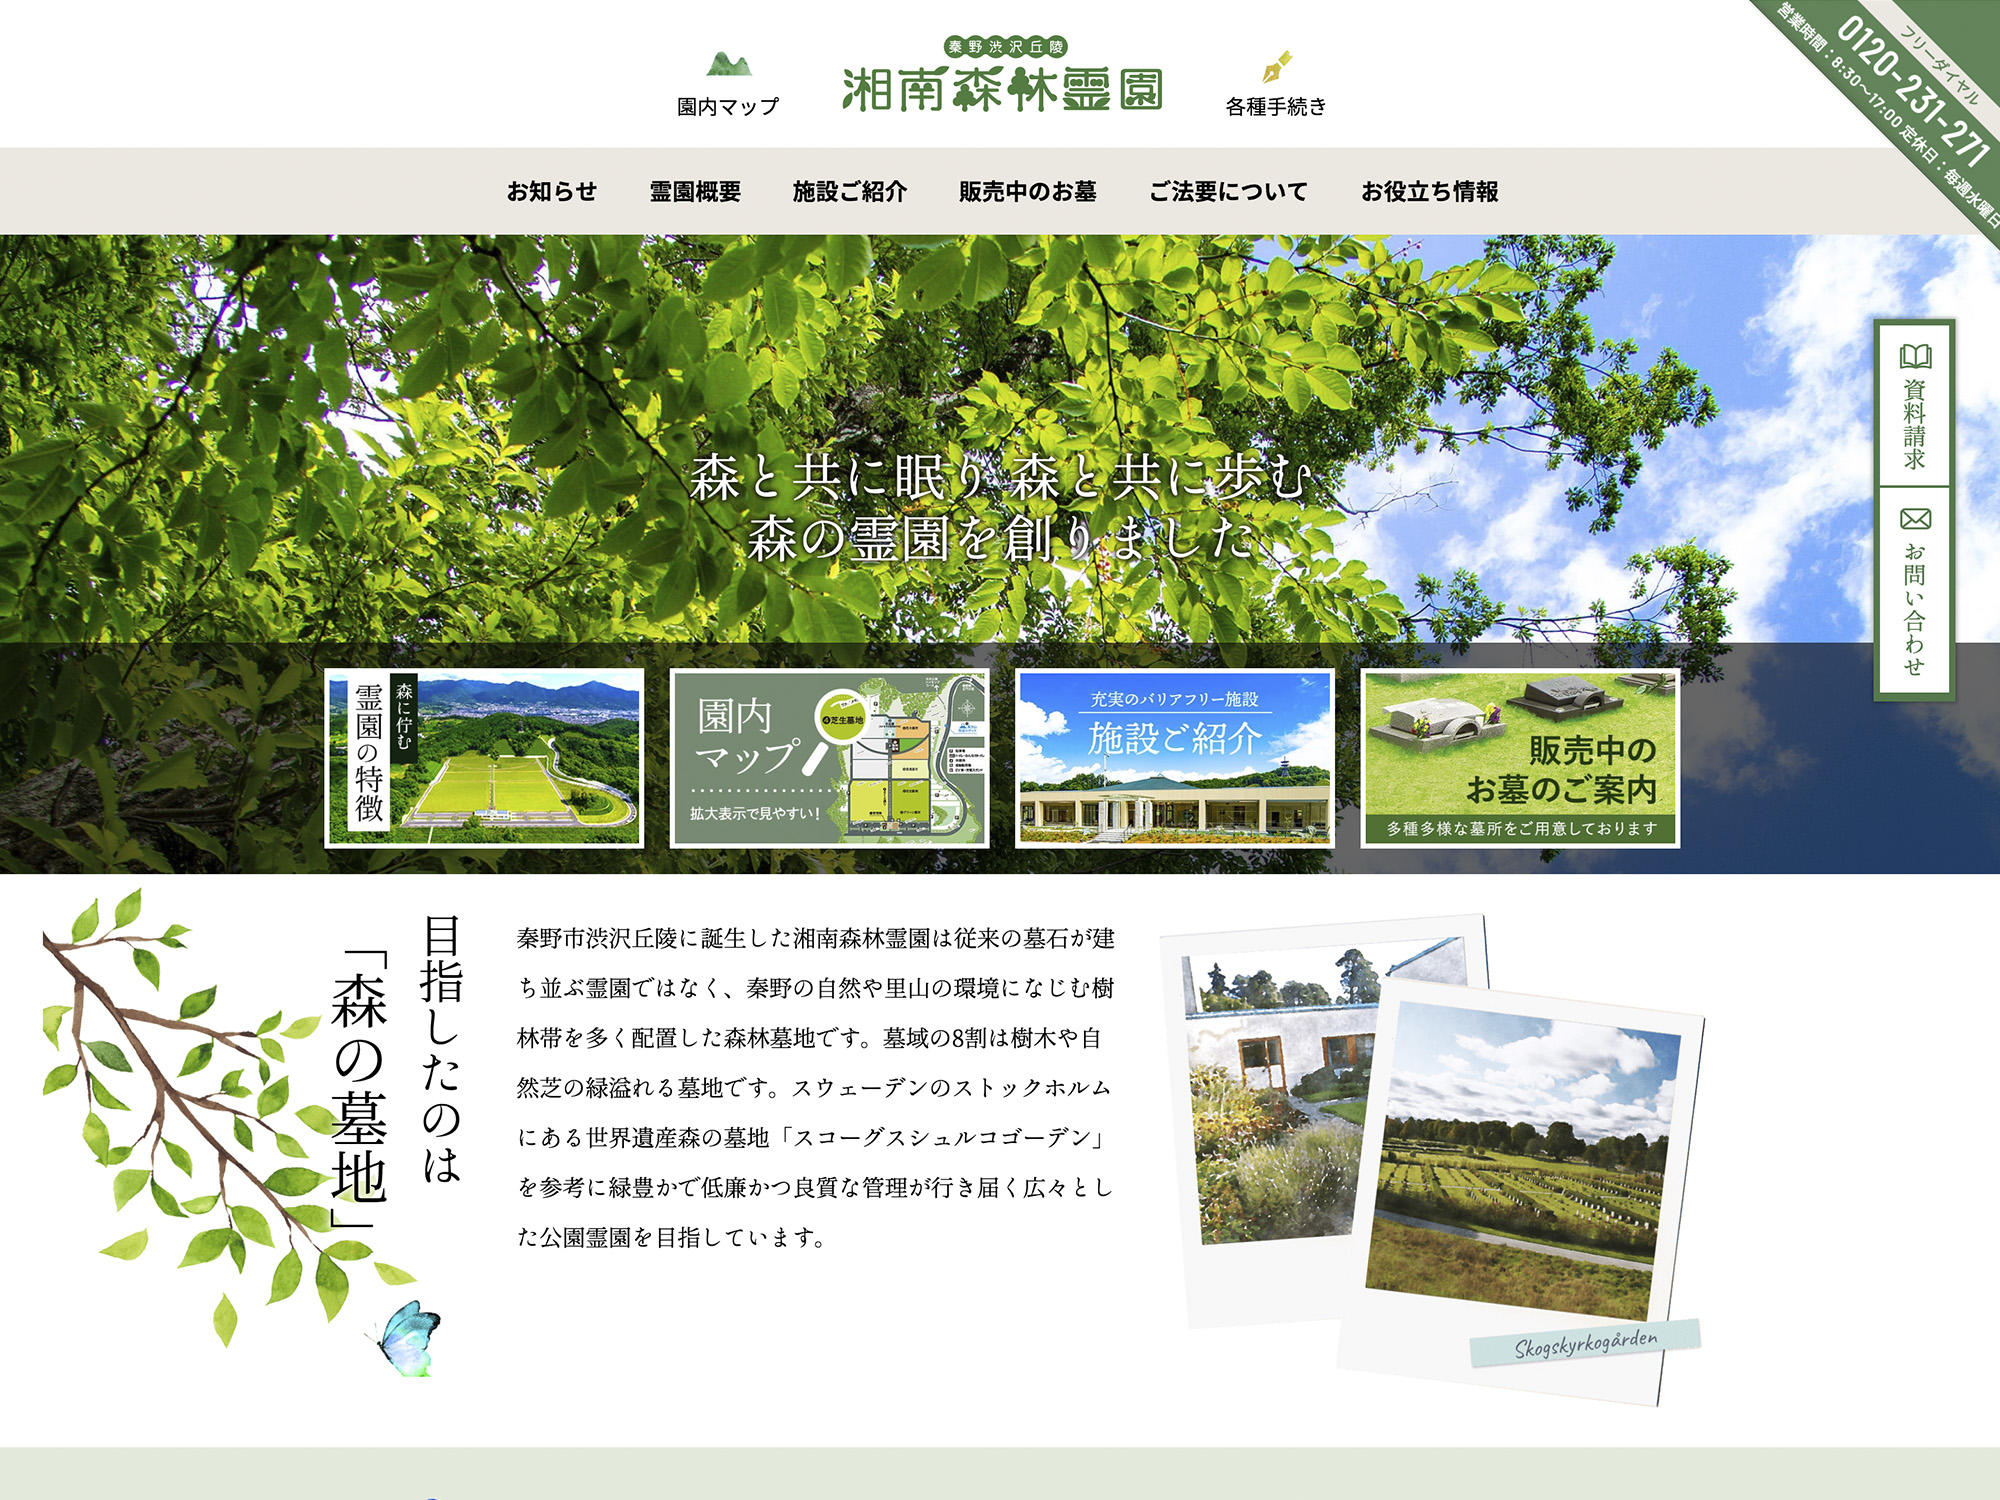 「湘南森林霊園」サイト公開しました